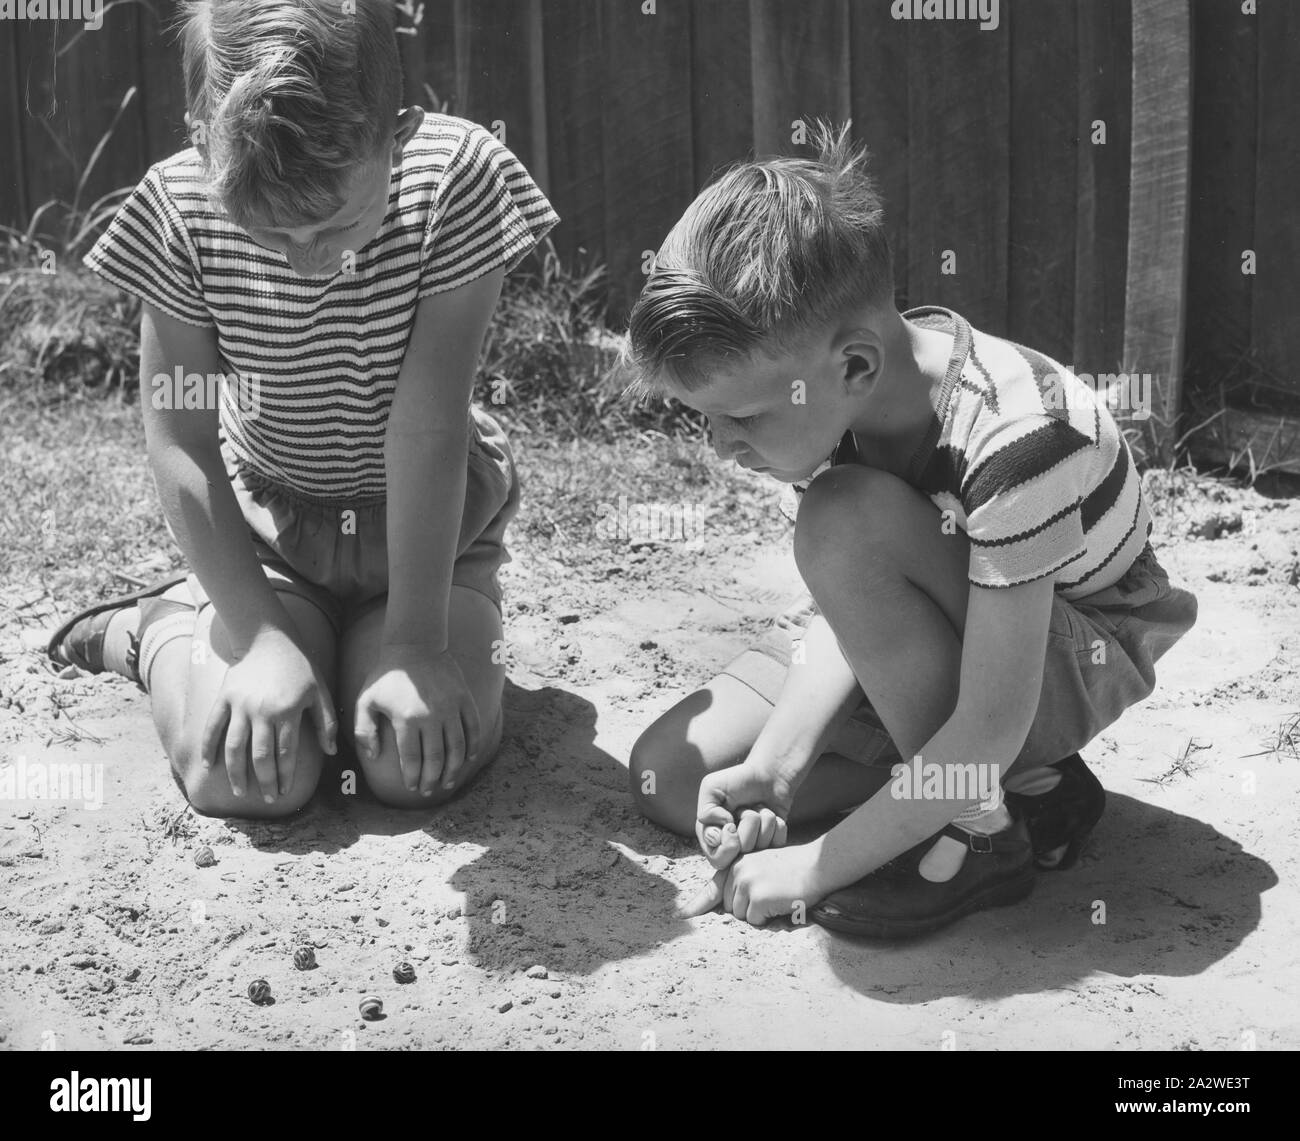 Photographie - garçons jouant aux billes, Dorothy Howard guidée, l'Australie, 1954, photographie noir et blanc représentant deux garçons jouant aux billes dans le sable, de l'Australie, 1954. Il fait partie d'un groupe de photographies prise par le folkloriste américain Dr Dorothy Howard alors qu'elle étudiait les jeux des enfants et playlore en Australie dans le cadre d'une bourse de recherche Fulbright,1954-1955. Ses photographies et la recherche sont devenues une partie de l'Australian Children's Folklore Collection à Banque D'Images